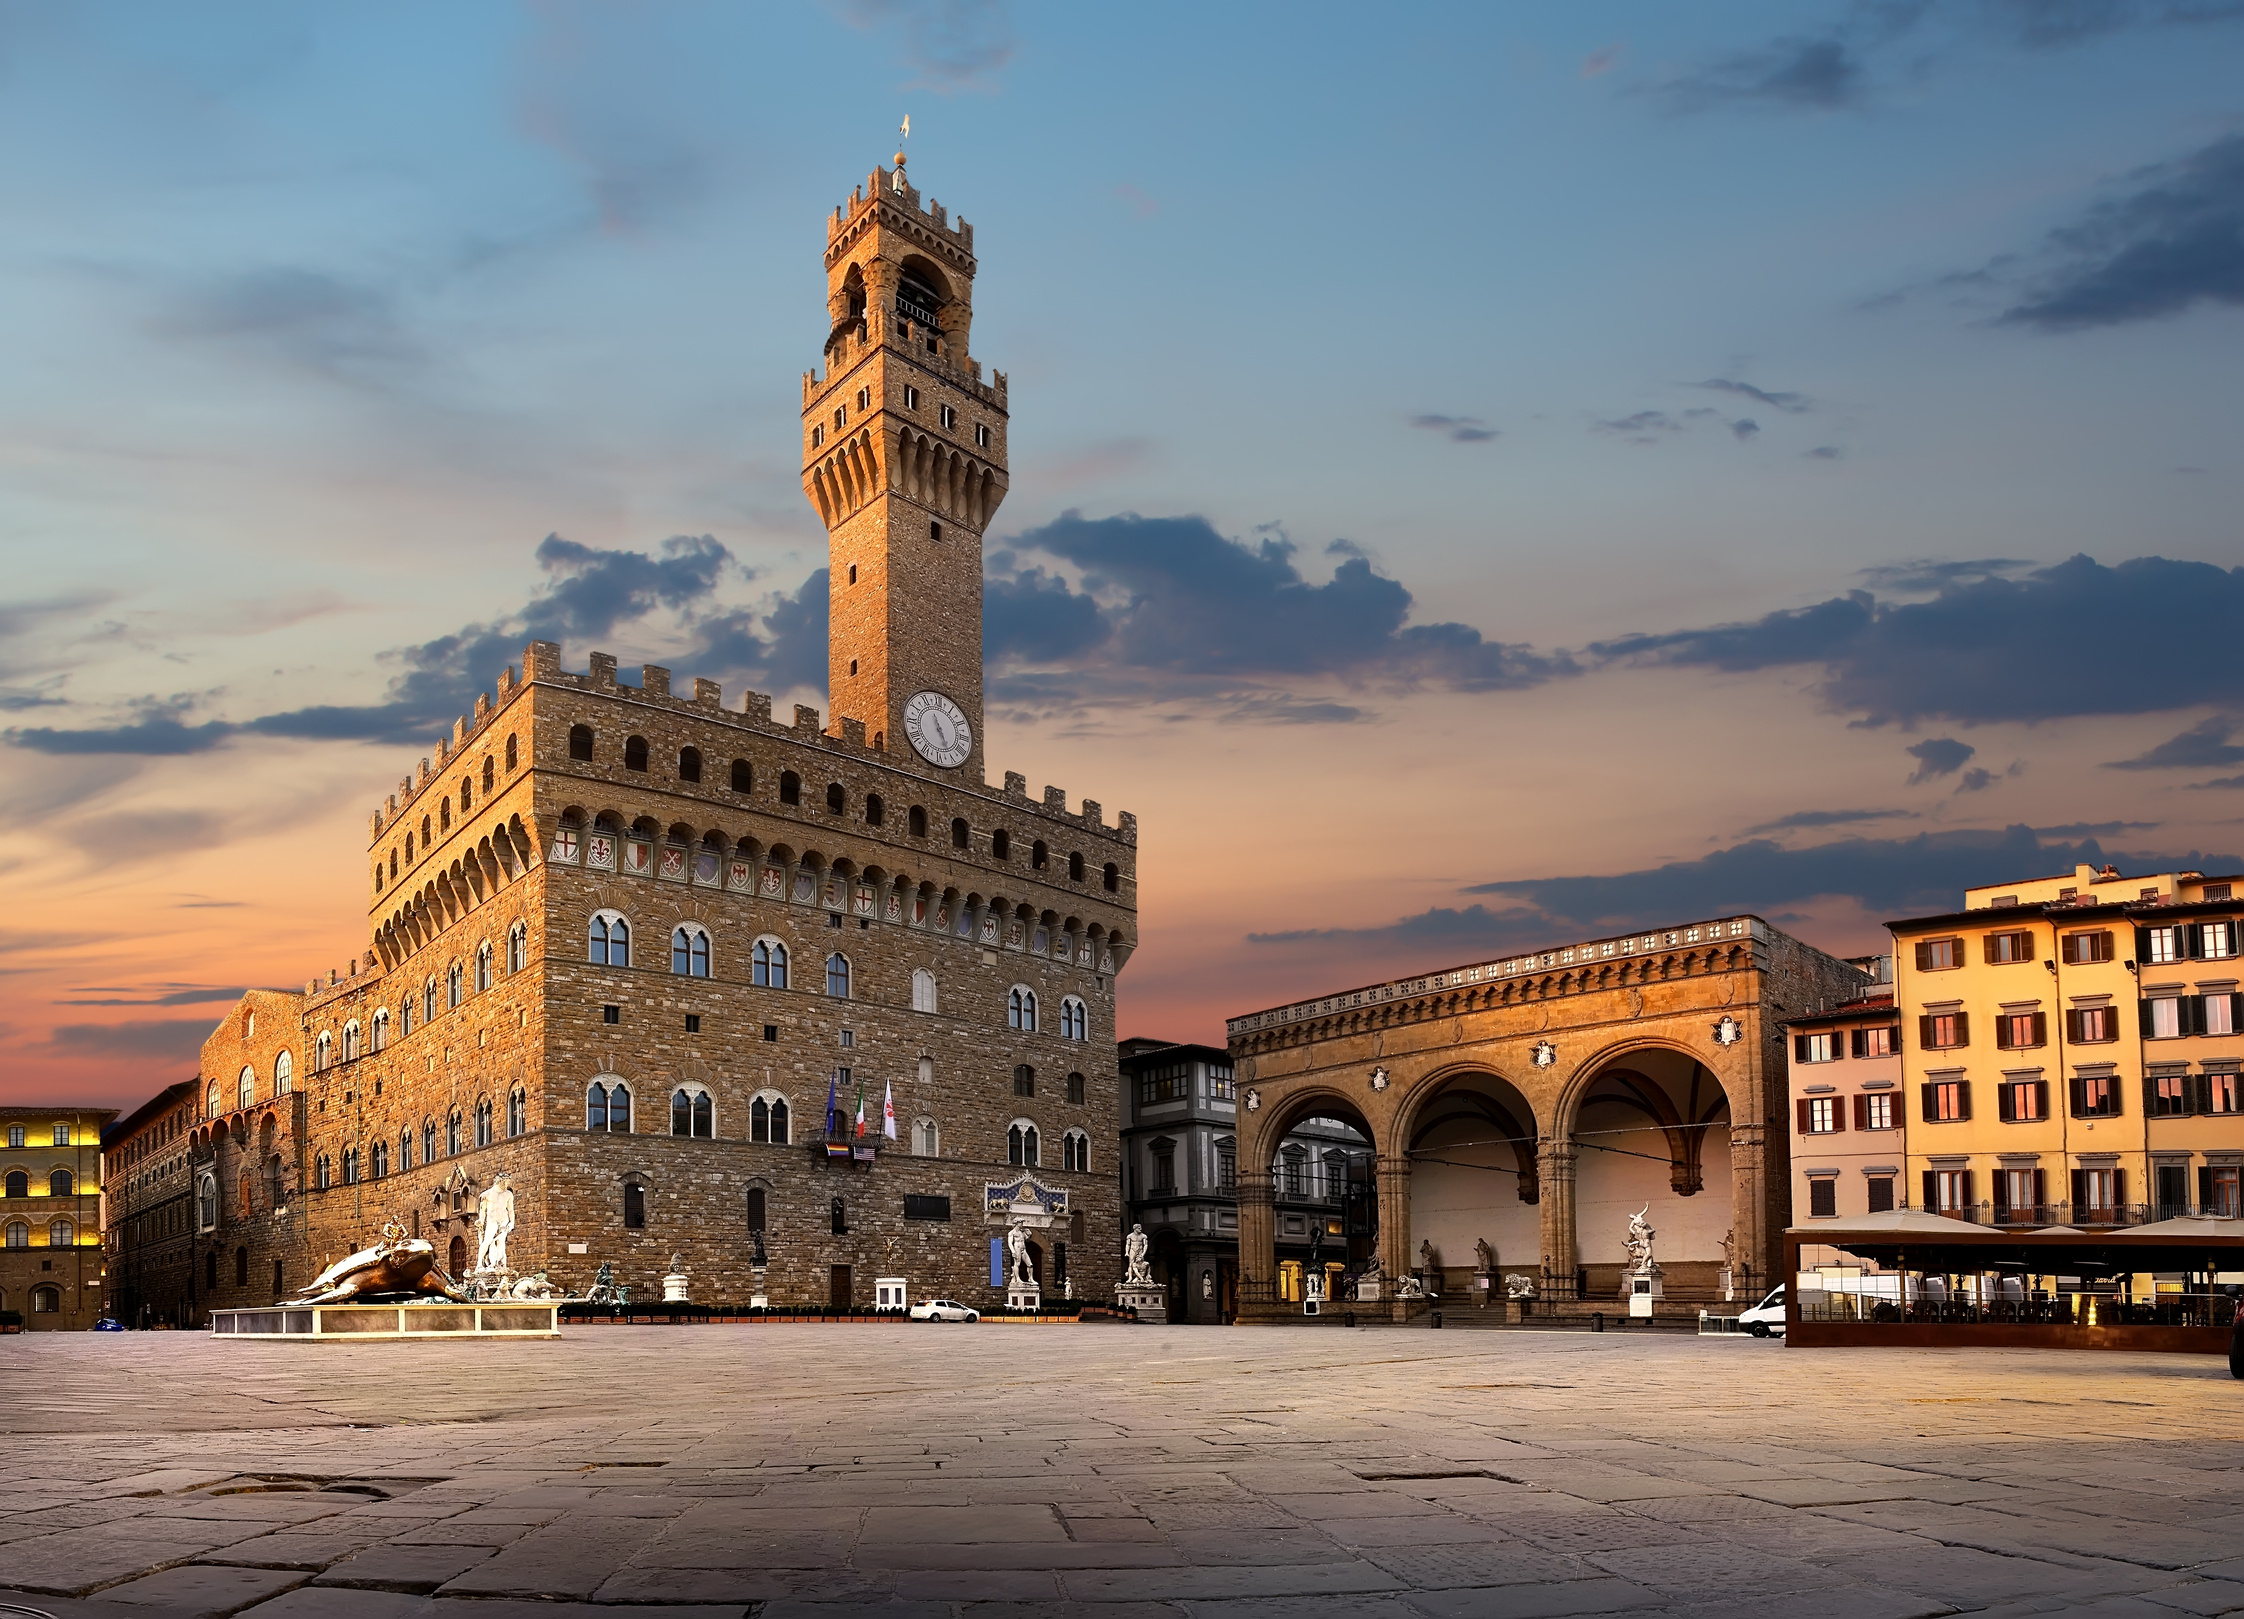 Piazza della Signoria in Florence Italy